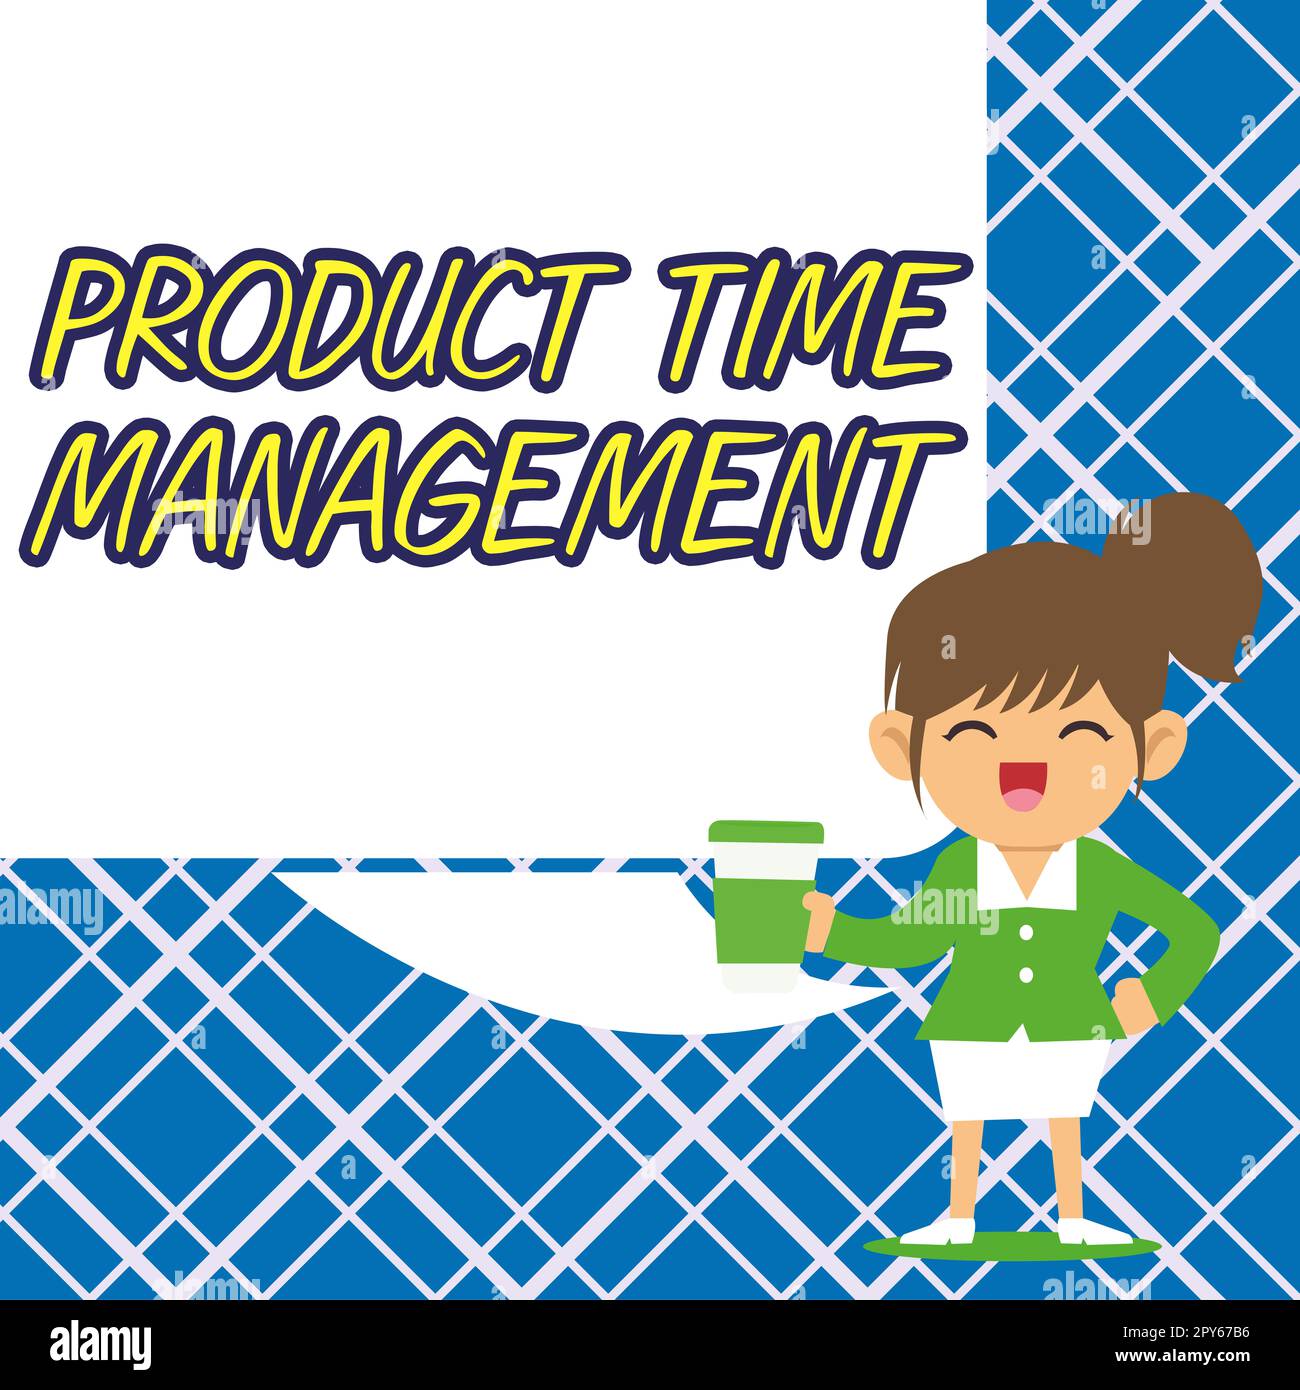 Affiche indiquant la gestion du temps des produits. Processus photo conceptuel de mesure des propriétés ou des performances des produits Banque D'Images